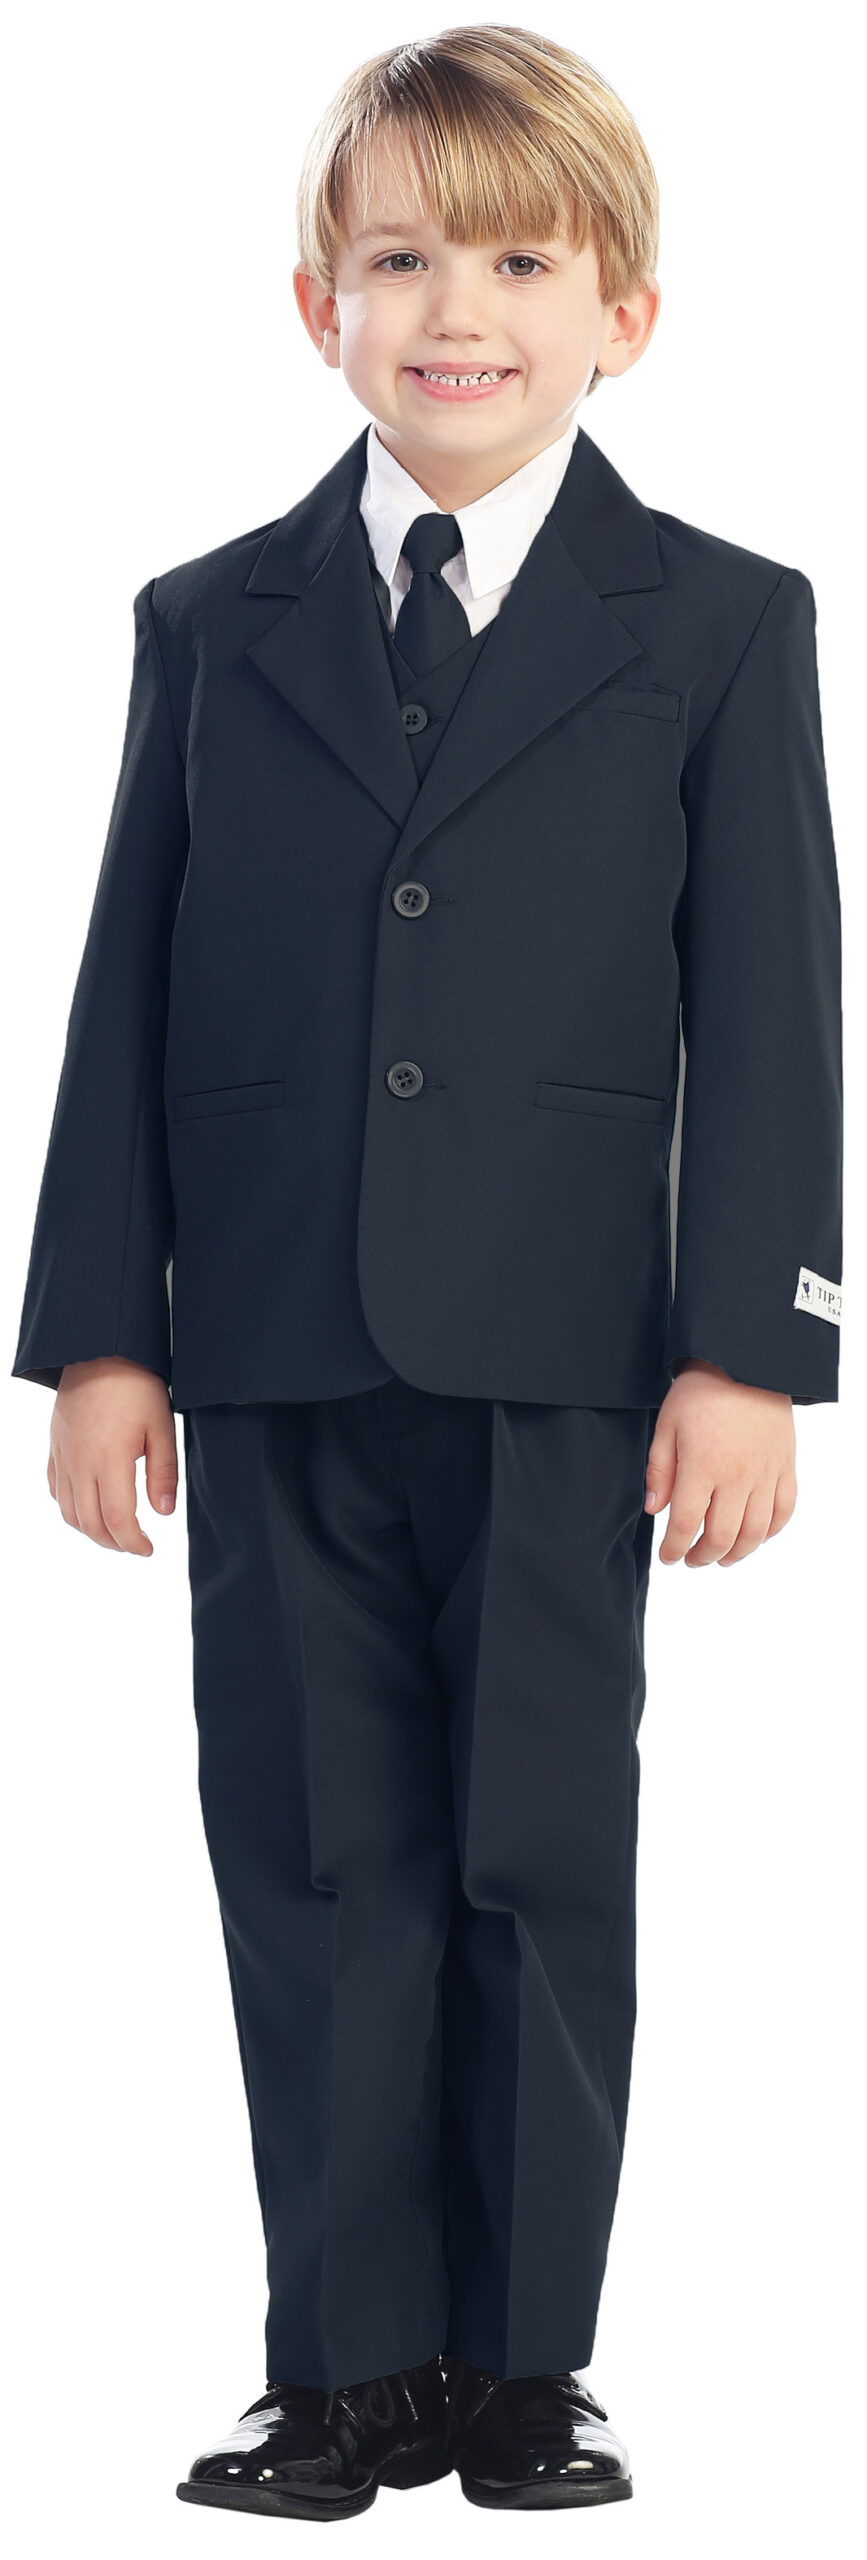 Avery Hill 5-Piece Boy's 2-Button Dress Suit Full-Back Vest - Navy Blue Size 12